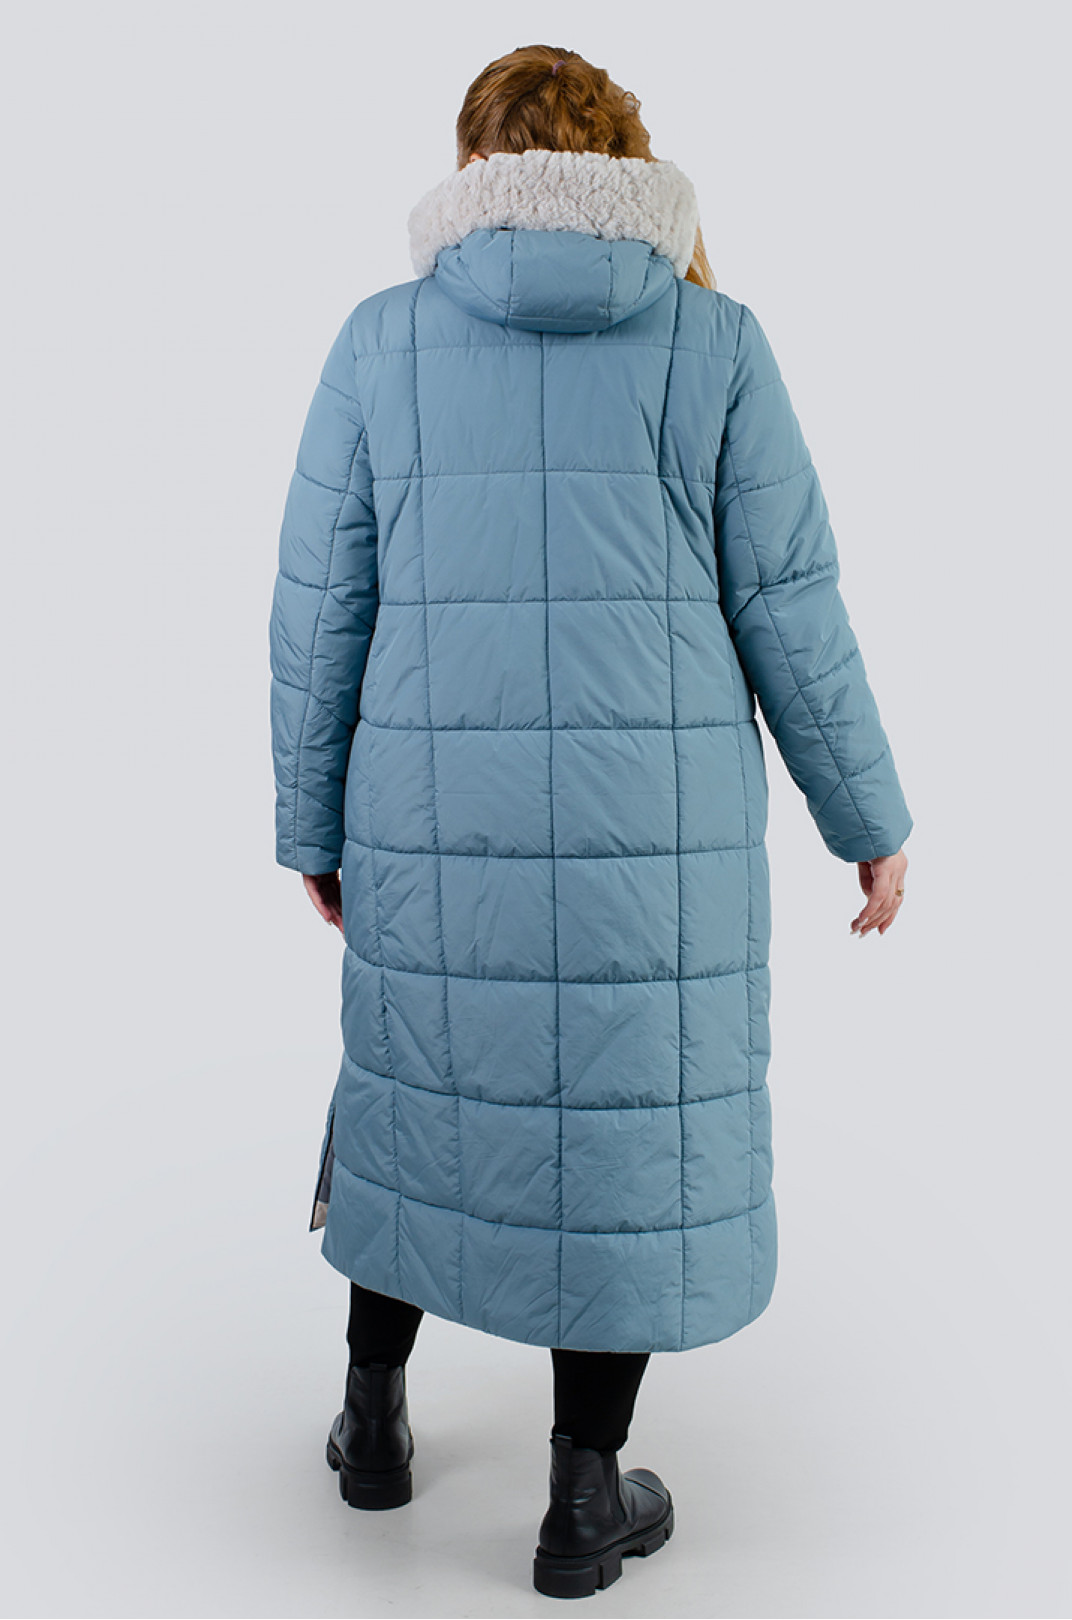 Теплое пальто синтепух с карманами на молниях супер батал